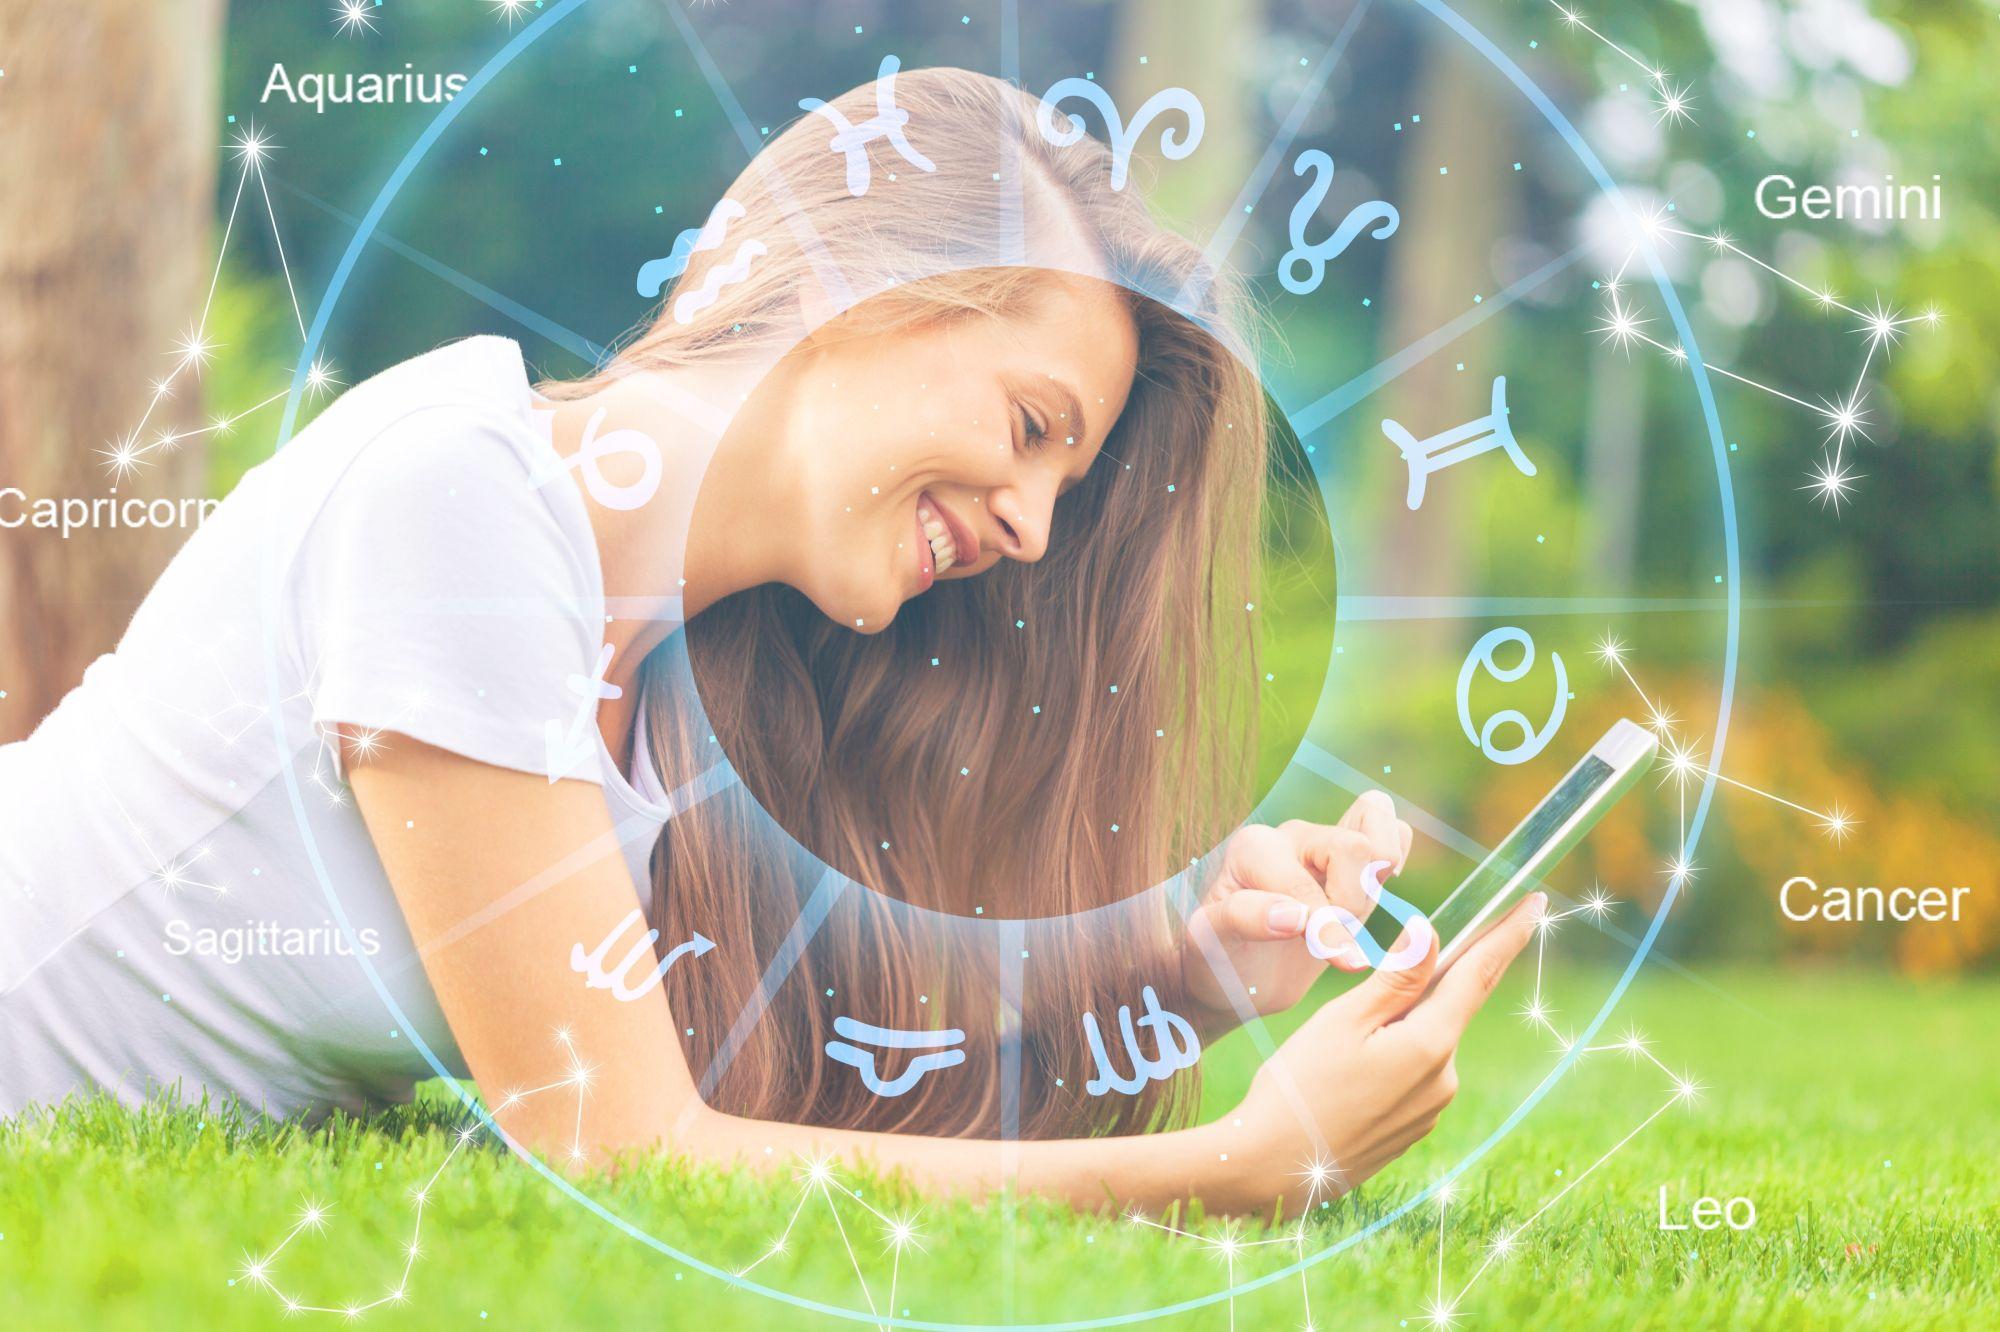 O fată întinsă pe iarbă se uită într-un telefon şi zâmbeşte, pe un fundal cu harta zodiilor